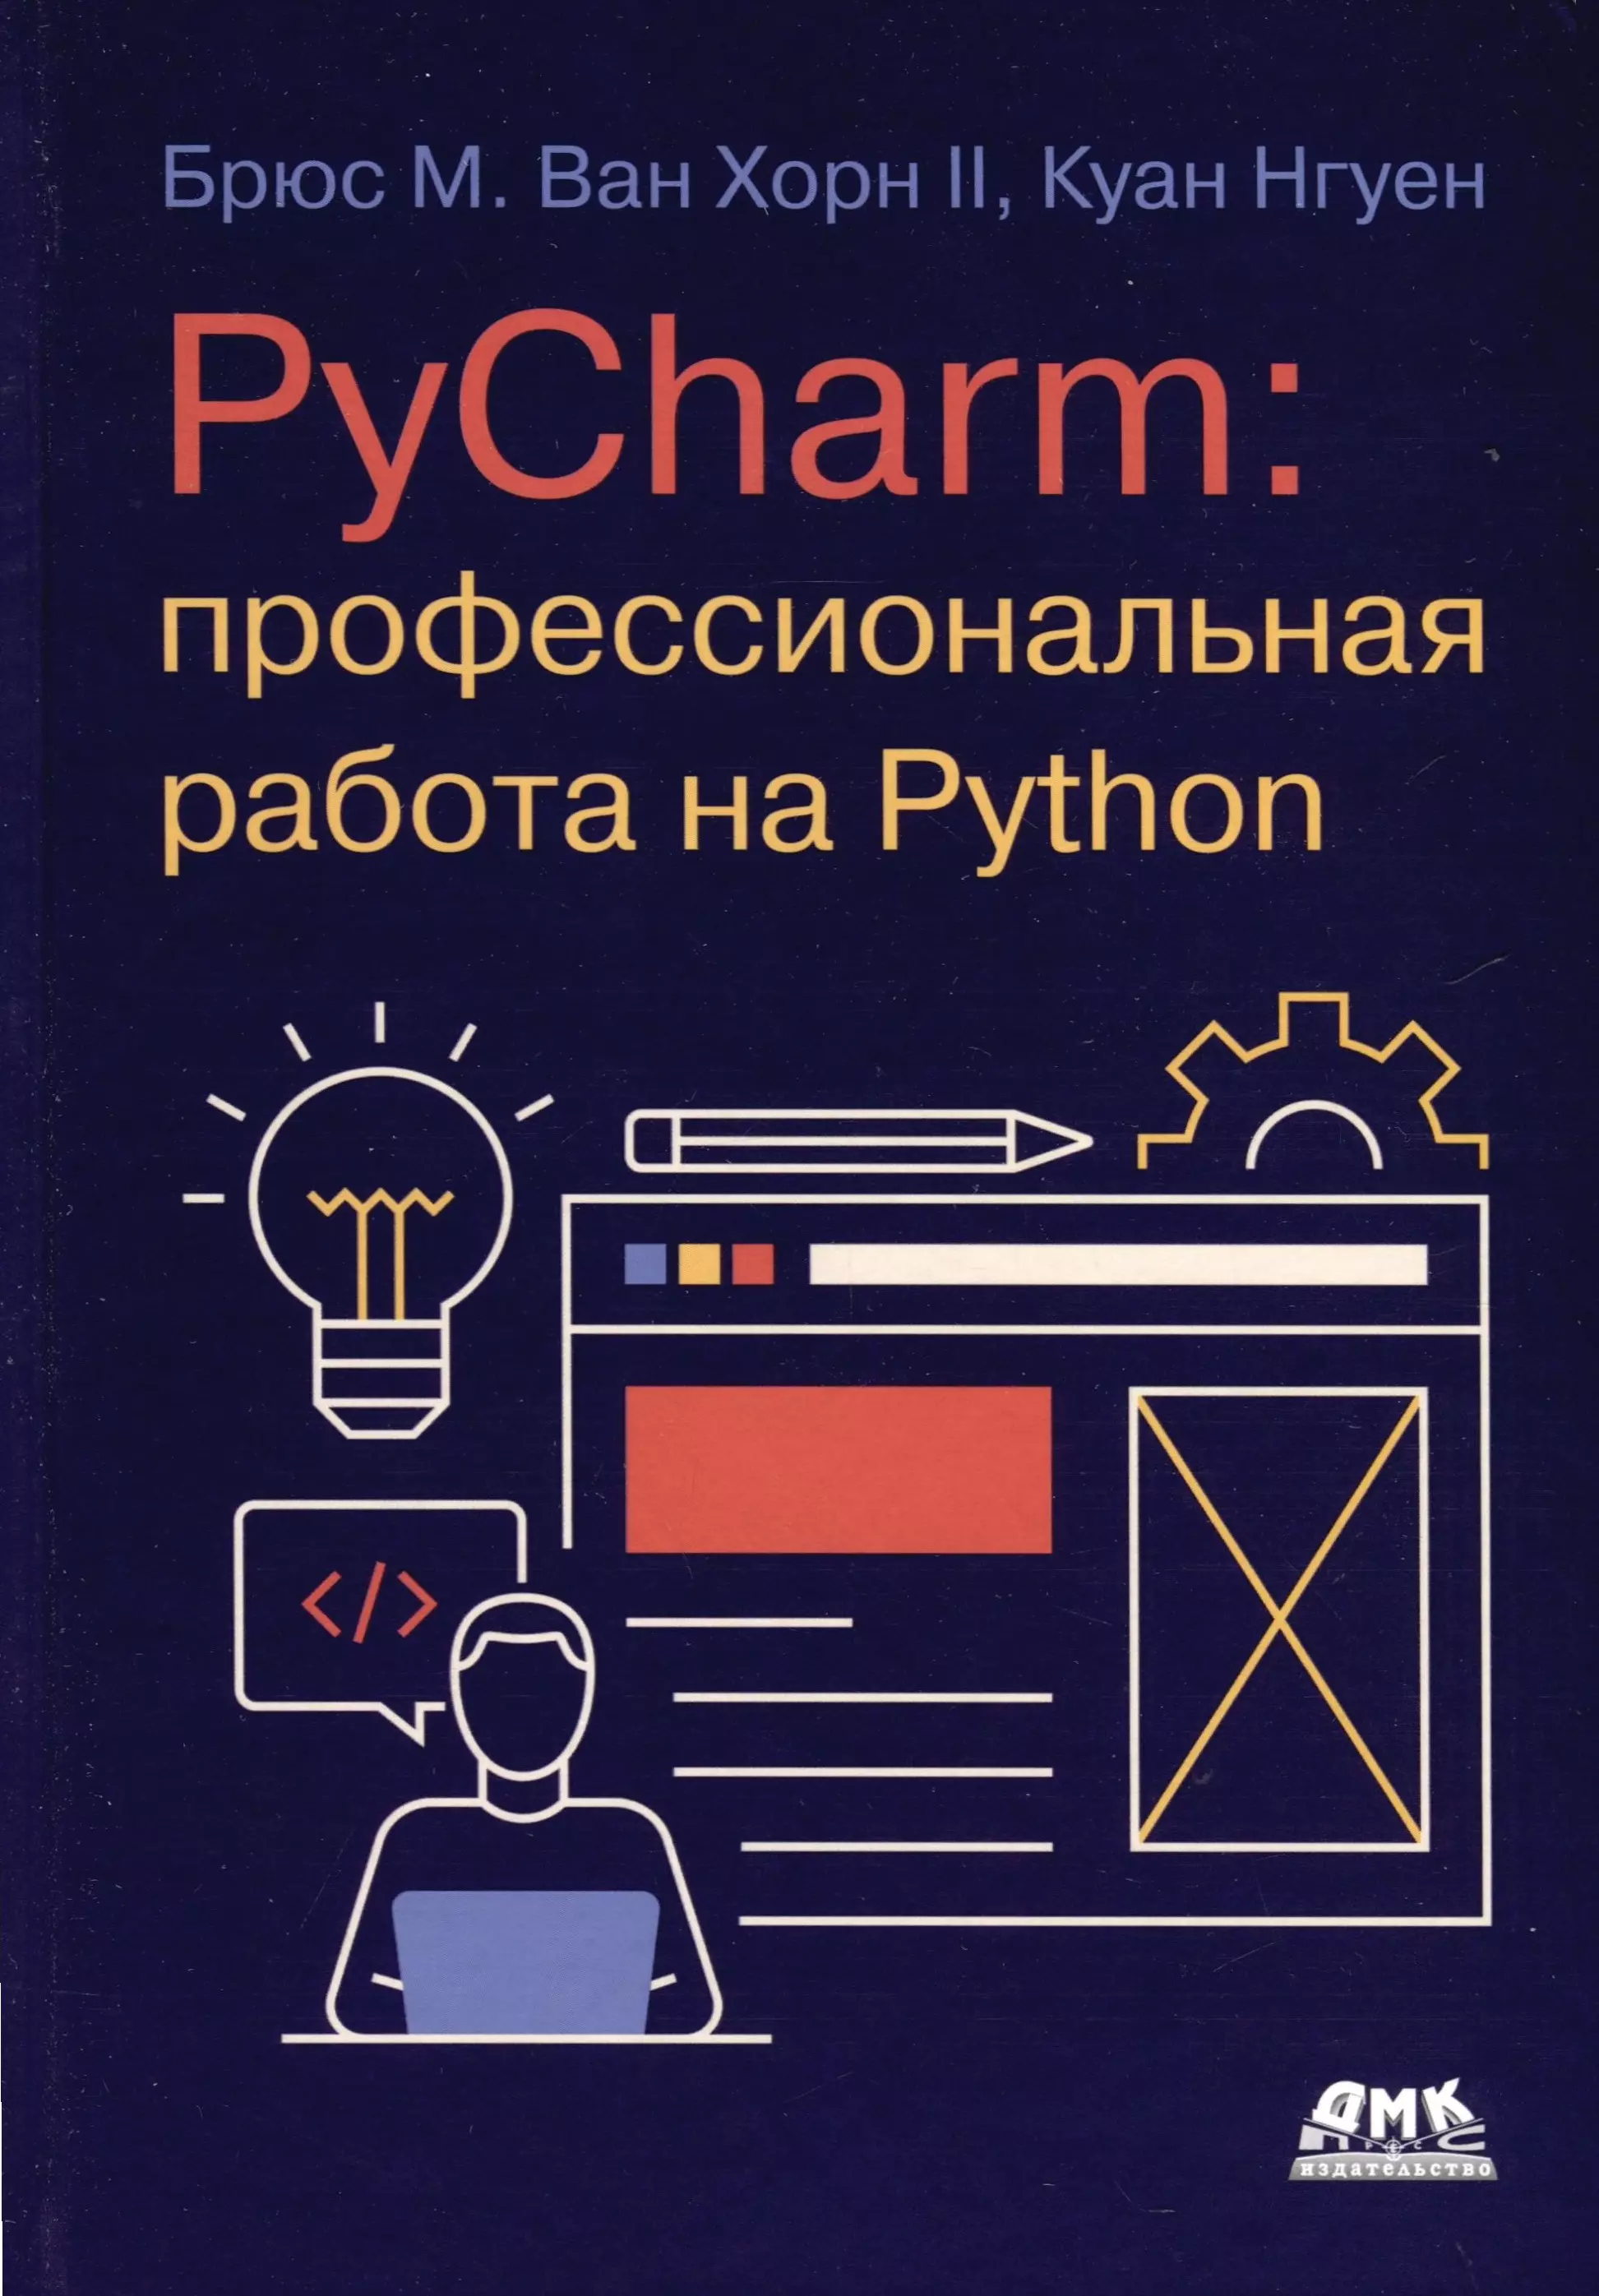 Нгуен Куан PYCHARM: профессиональная работа на PYTHON постолит анатолий python django и pycharm для начинающих